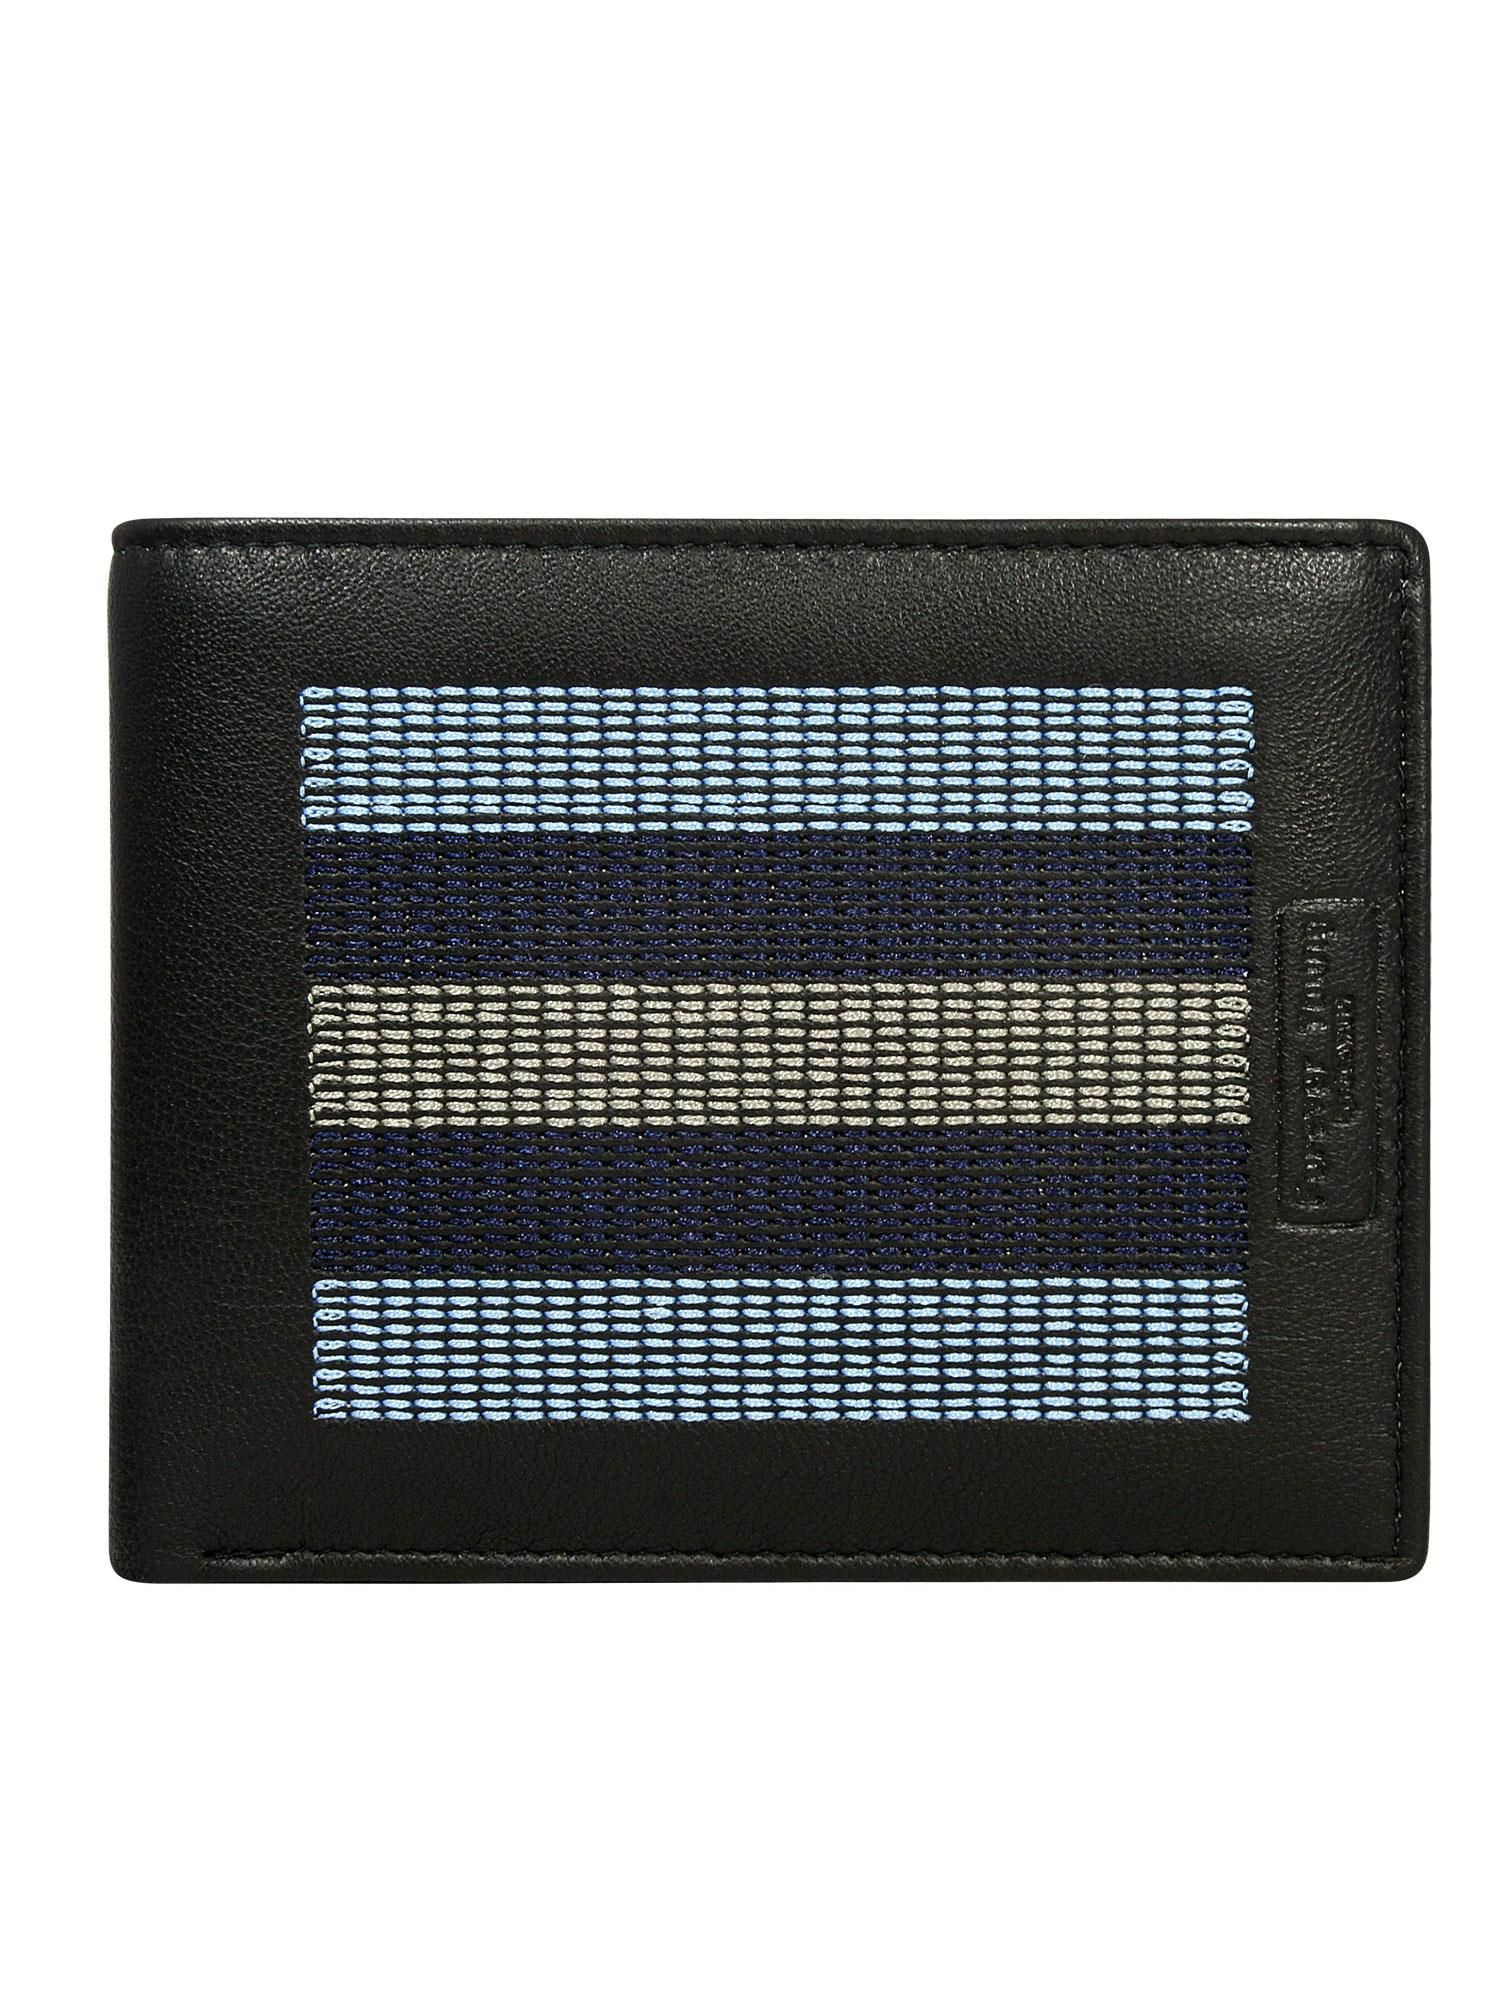 Peněženka CE PF 701 EG.87 černá a modrá jedna velikost